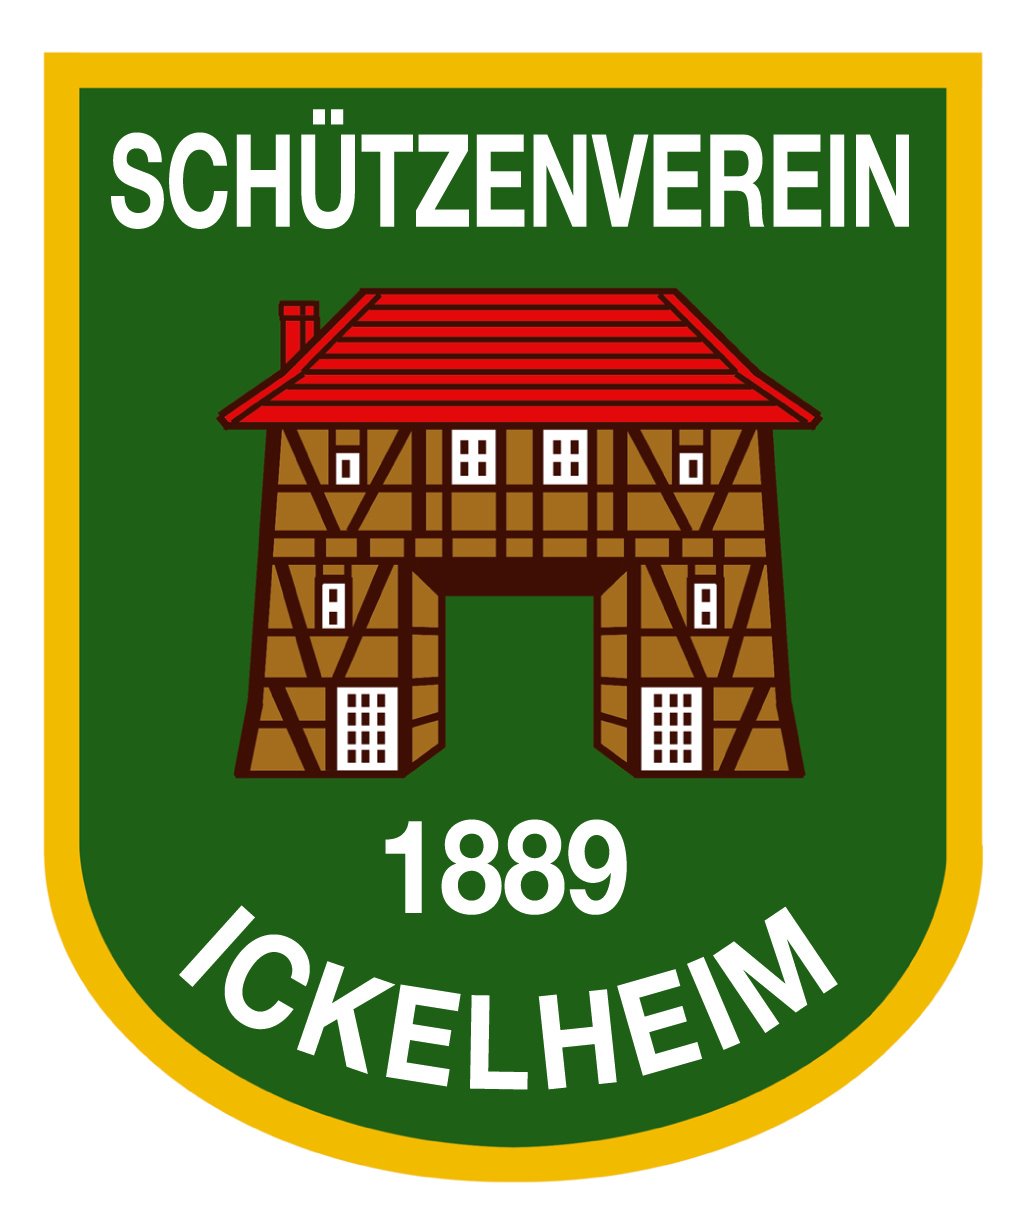 Generalversammlung 2012 des Schützenvereins 1889 Ickelheim